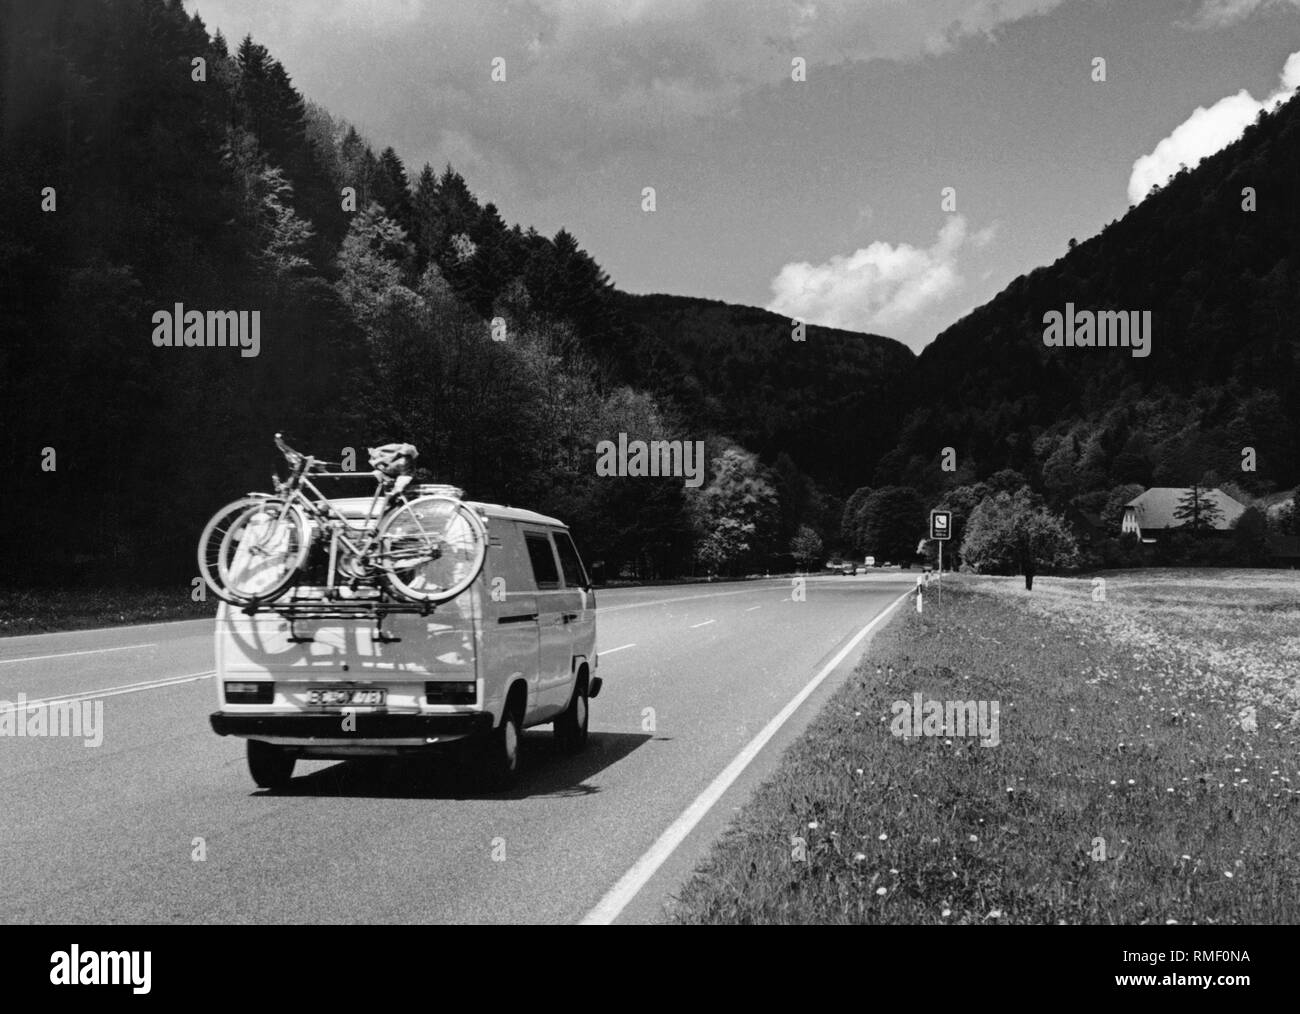 Un VW T3 bus avec porte vélo sur une route de campagne Photo Stock - Alamy